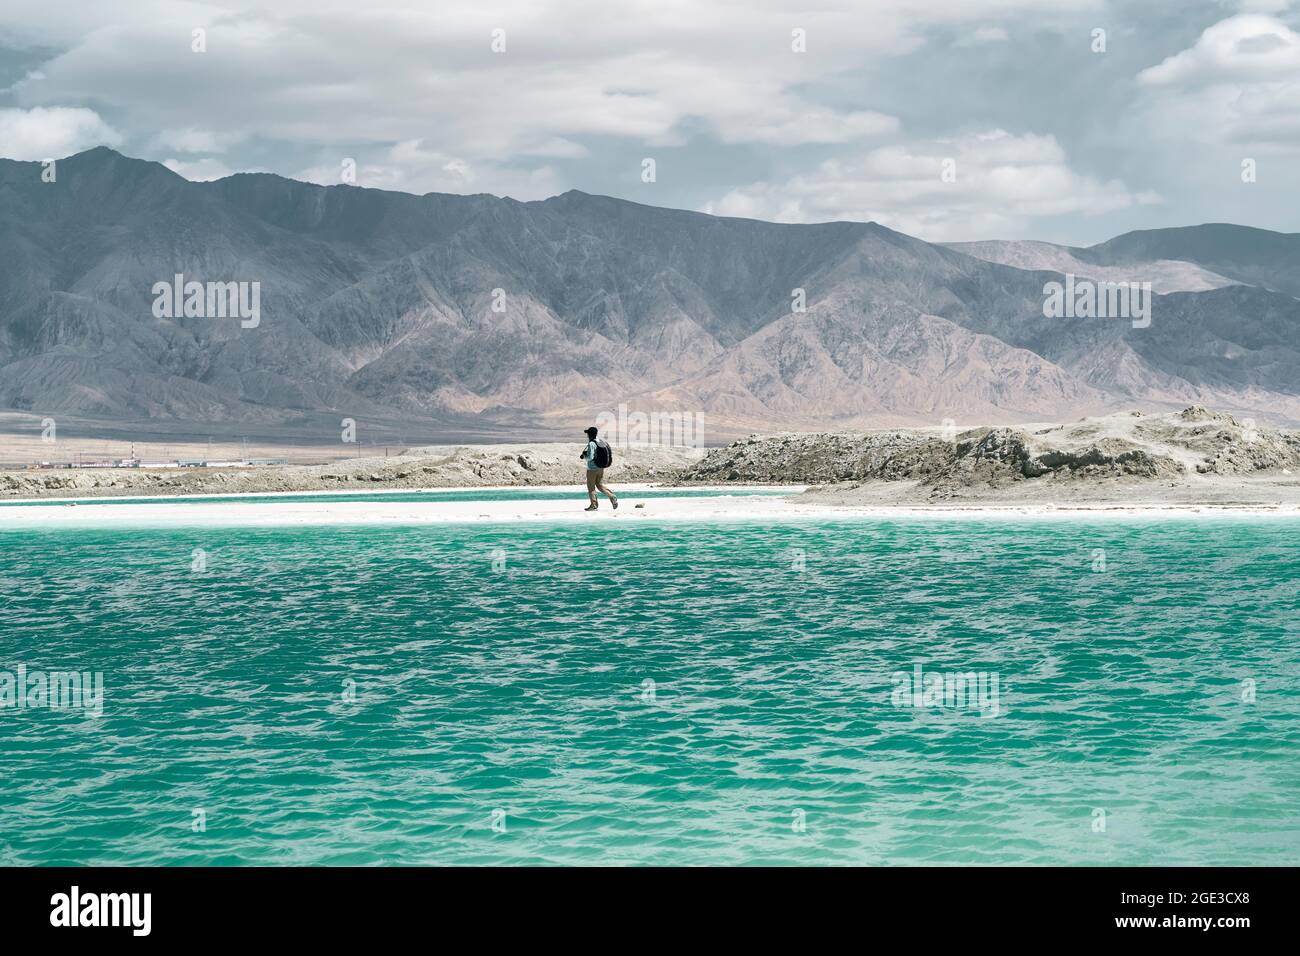 fotografo maschile asiatico a piedi da un lago salato con montagne ondulate sullo sfondo Foto Stock